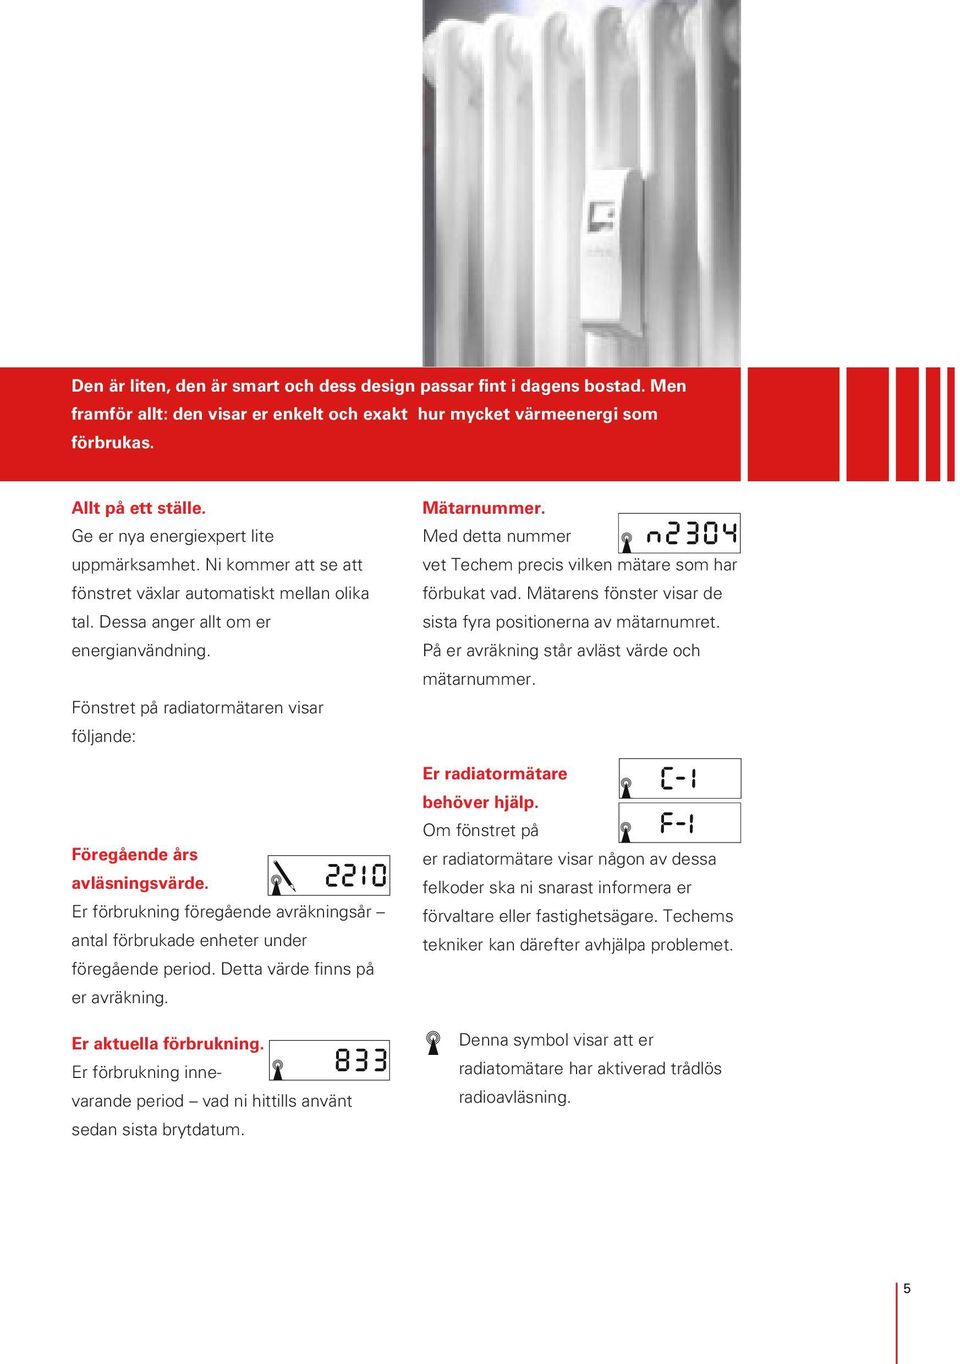 Fönstret på radiatormätaren visar följande: Föregående års avläsningsvärde. Er förbrukning föregående avräkningsår antal förbrukade enheter under föregående period. Detta värde finns på er avräkning.